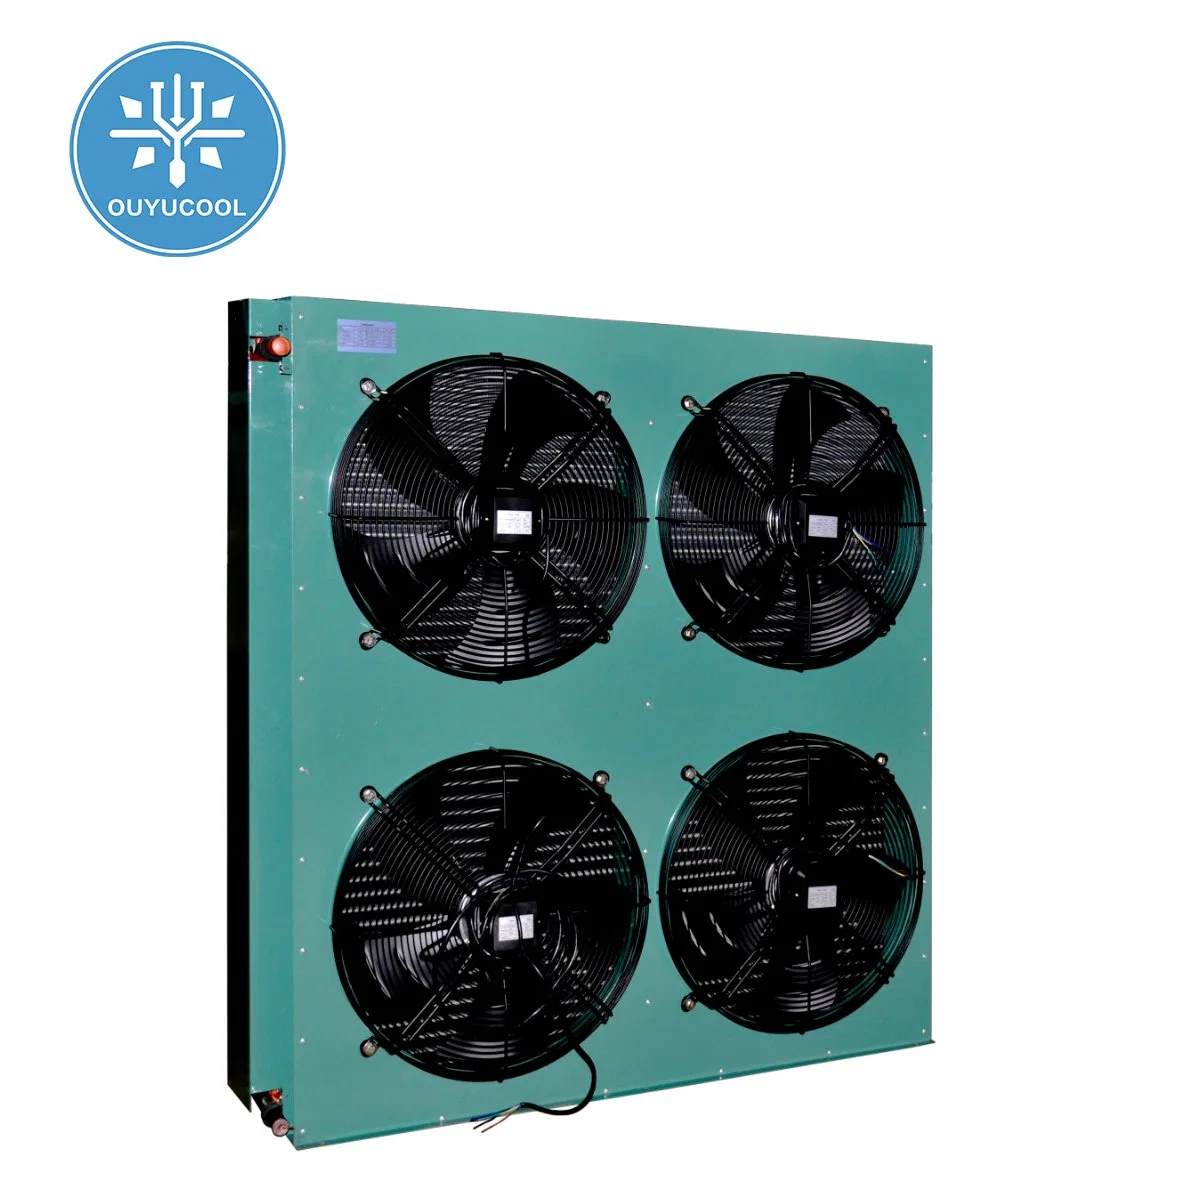 Condensador silencioso e eficiente Equipamento de refrigeração vendido a quente